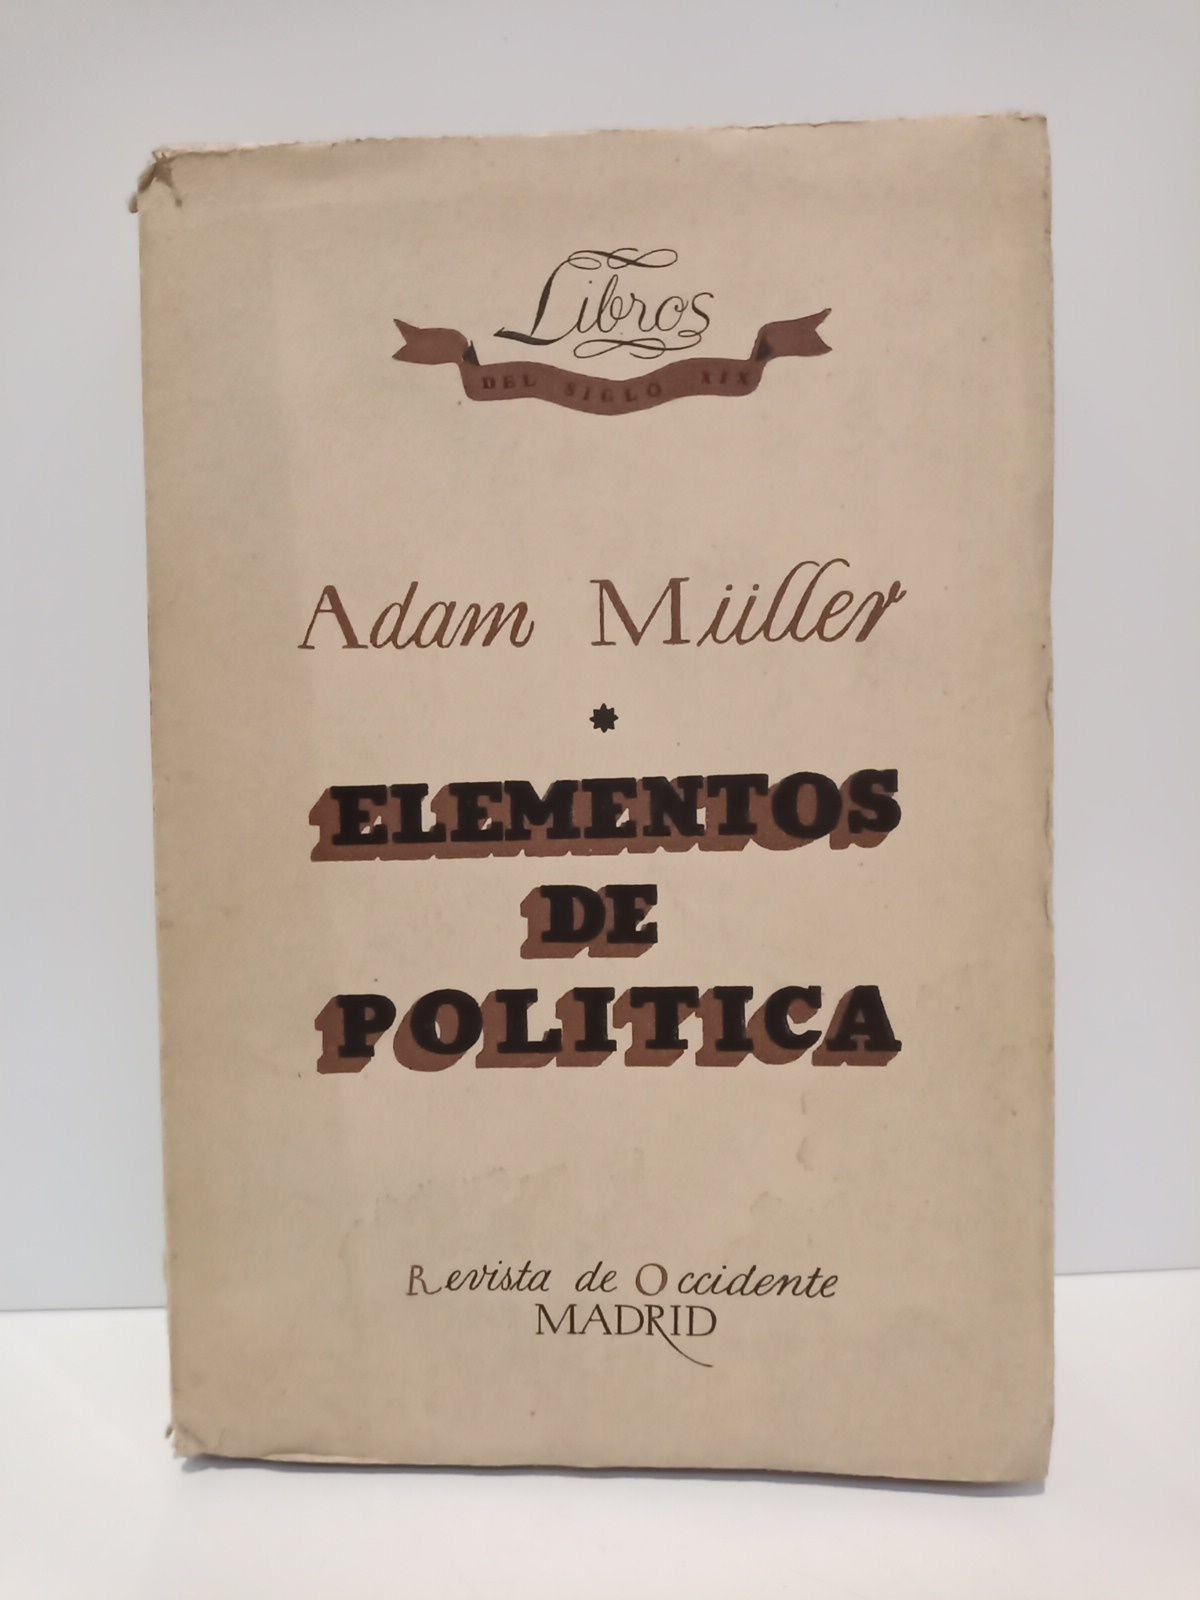 MLLER, Adam - Elementos de poltica: Lecciones dadas en Dresden en el Invierno de 1808-1809 /  Traduc. del alemn, por E. Imaz; portada de Amster